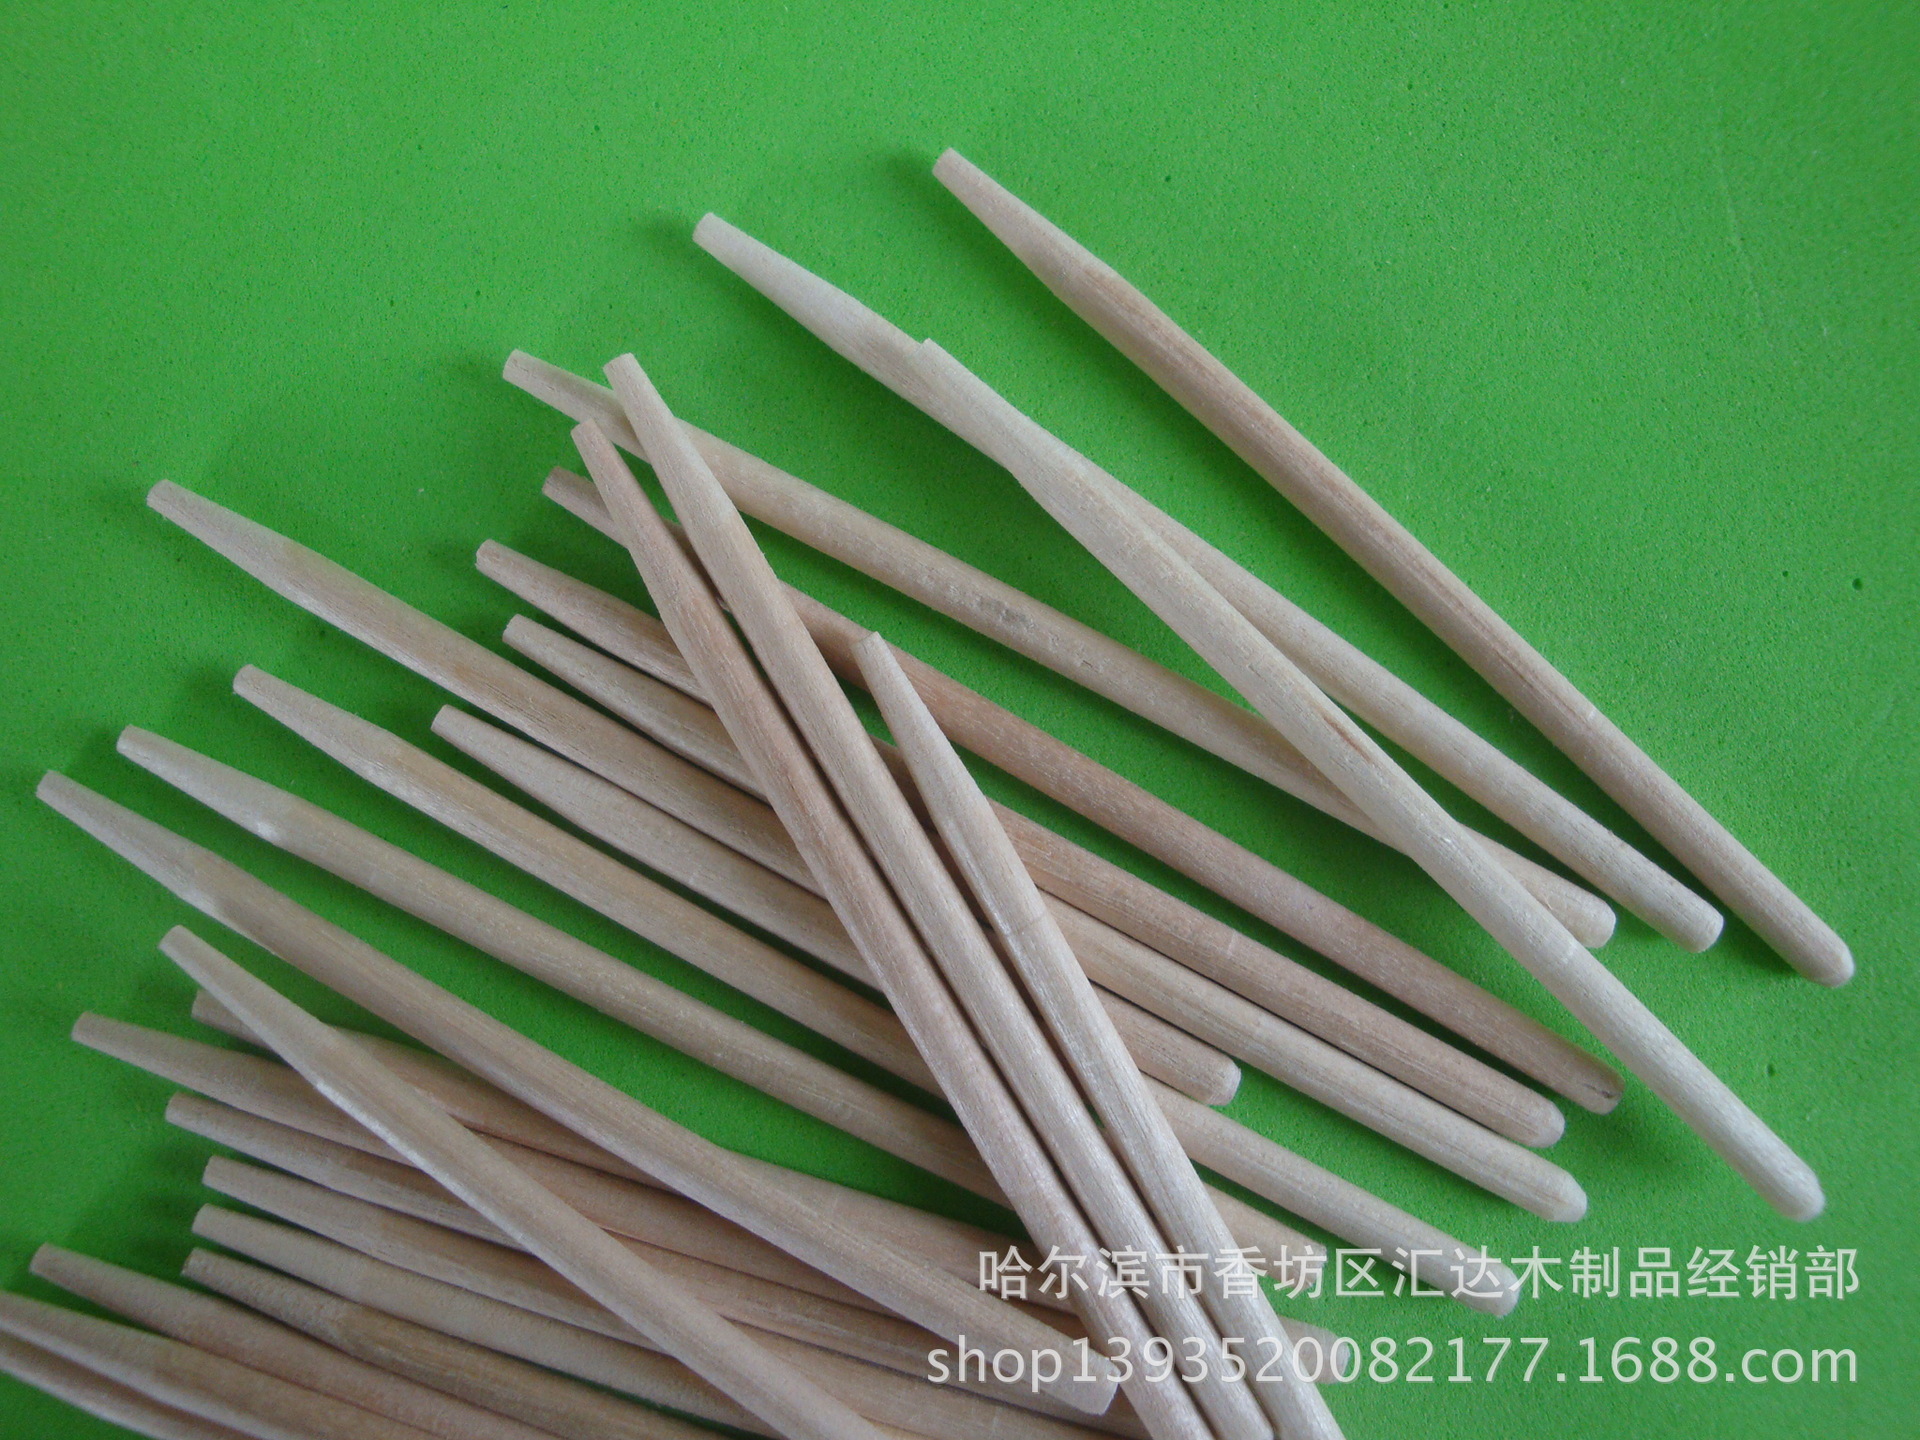 厂家供应糖棒 圆木糖棒 环保磨尖糖棒 一次性木质糖棒示例图5